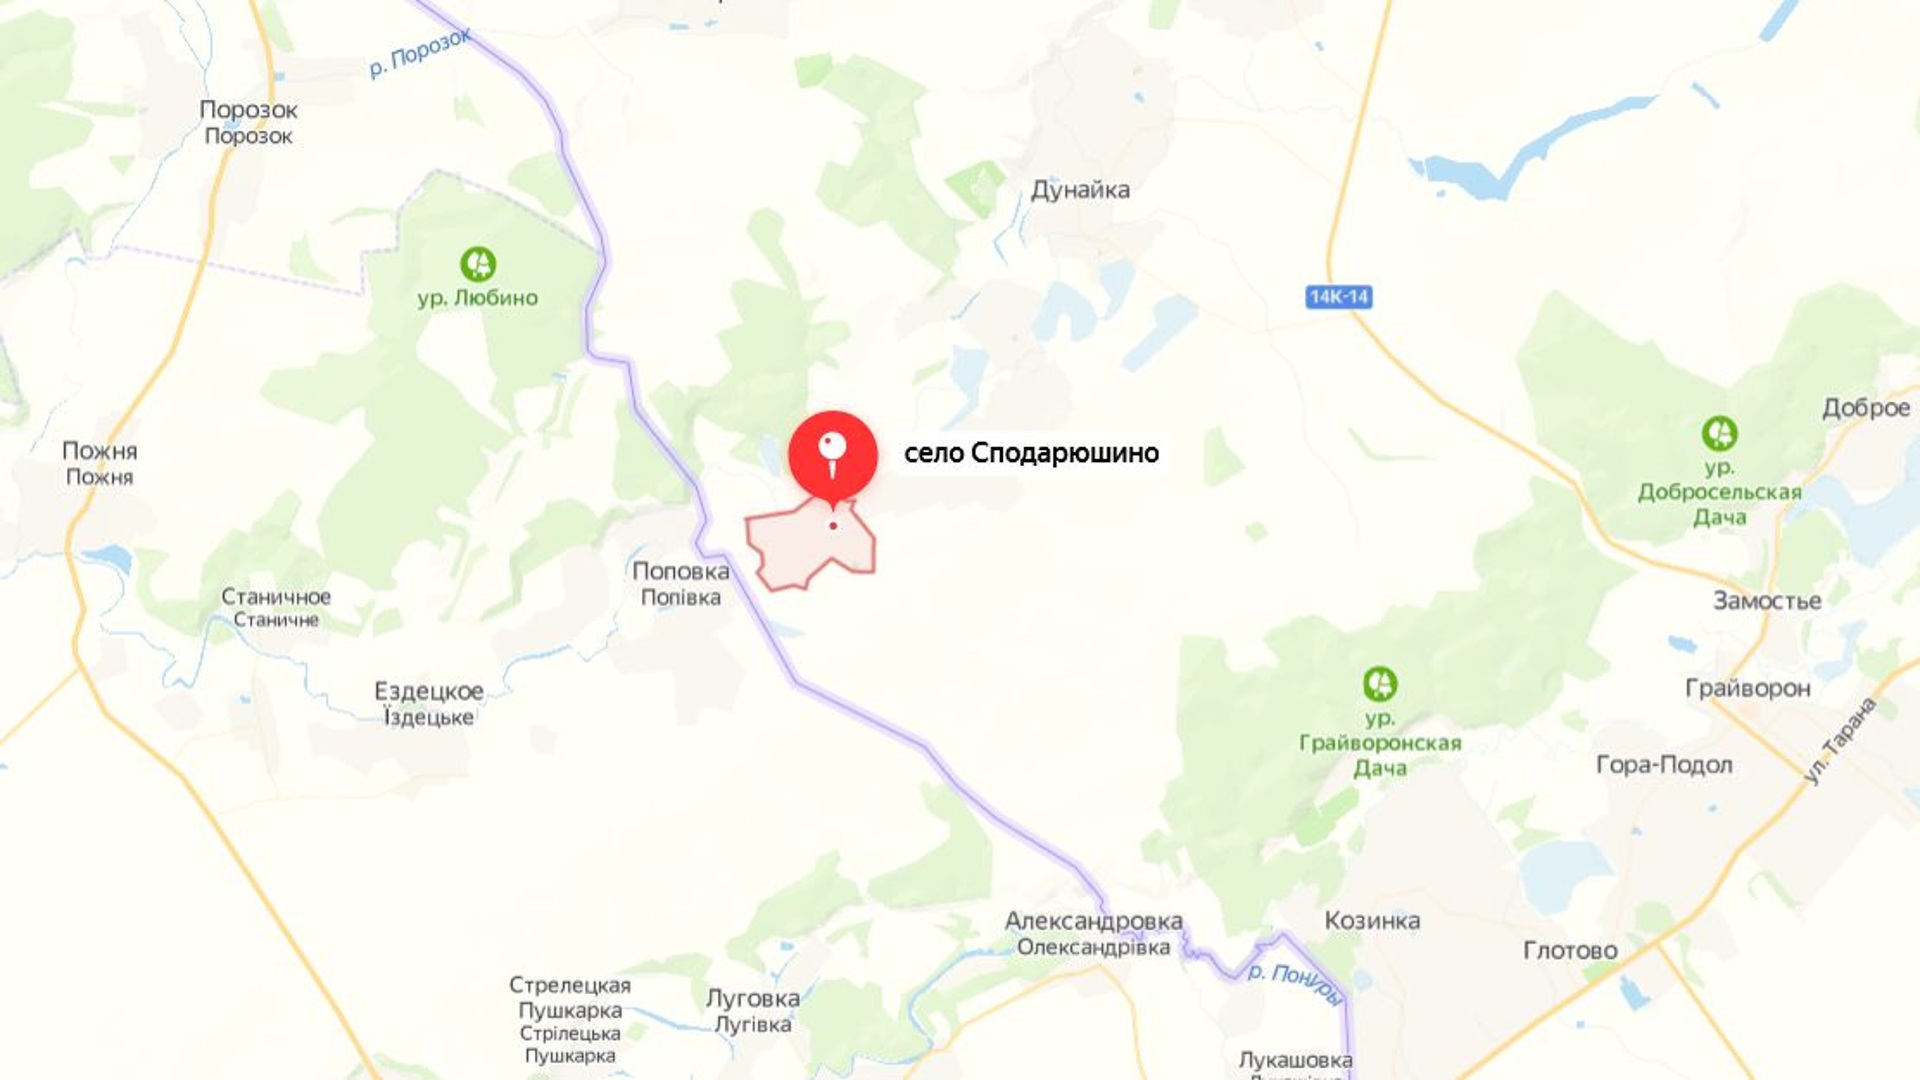 Грайворонский район белгородской области граница с украиной